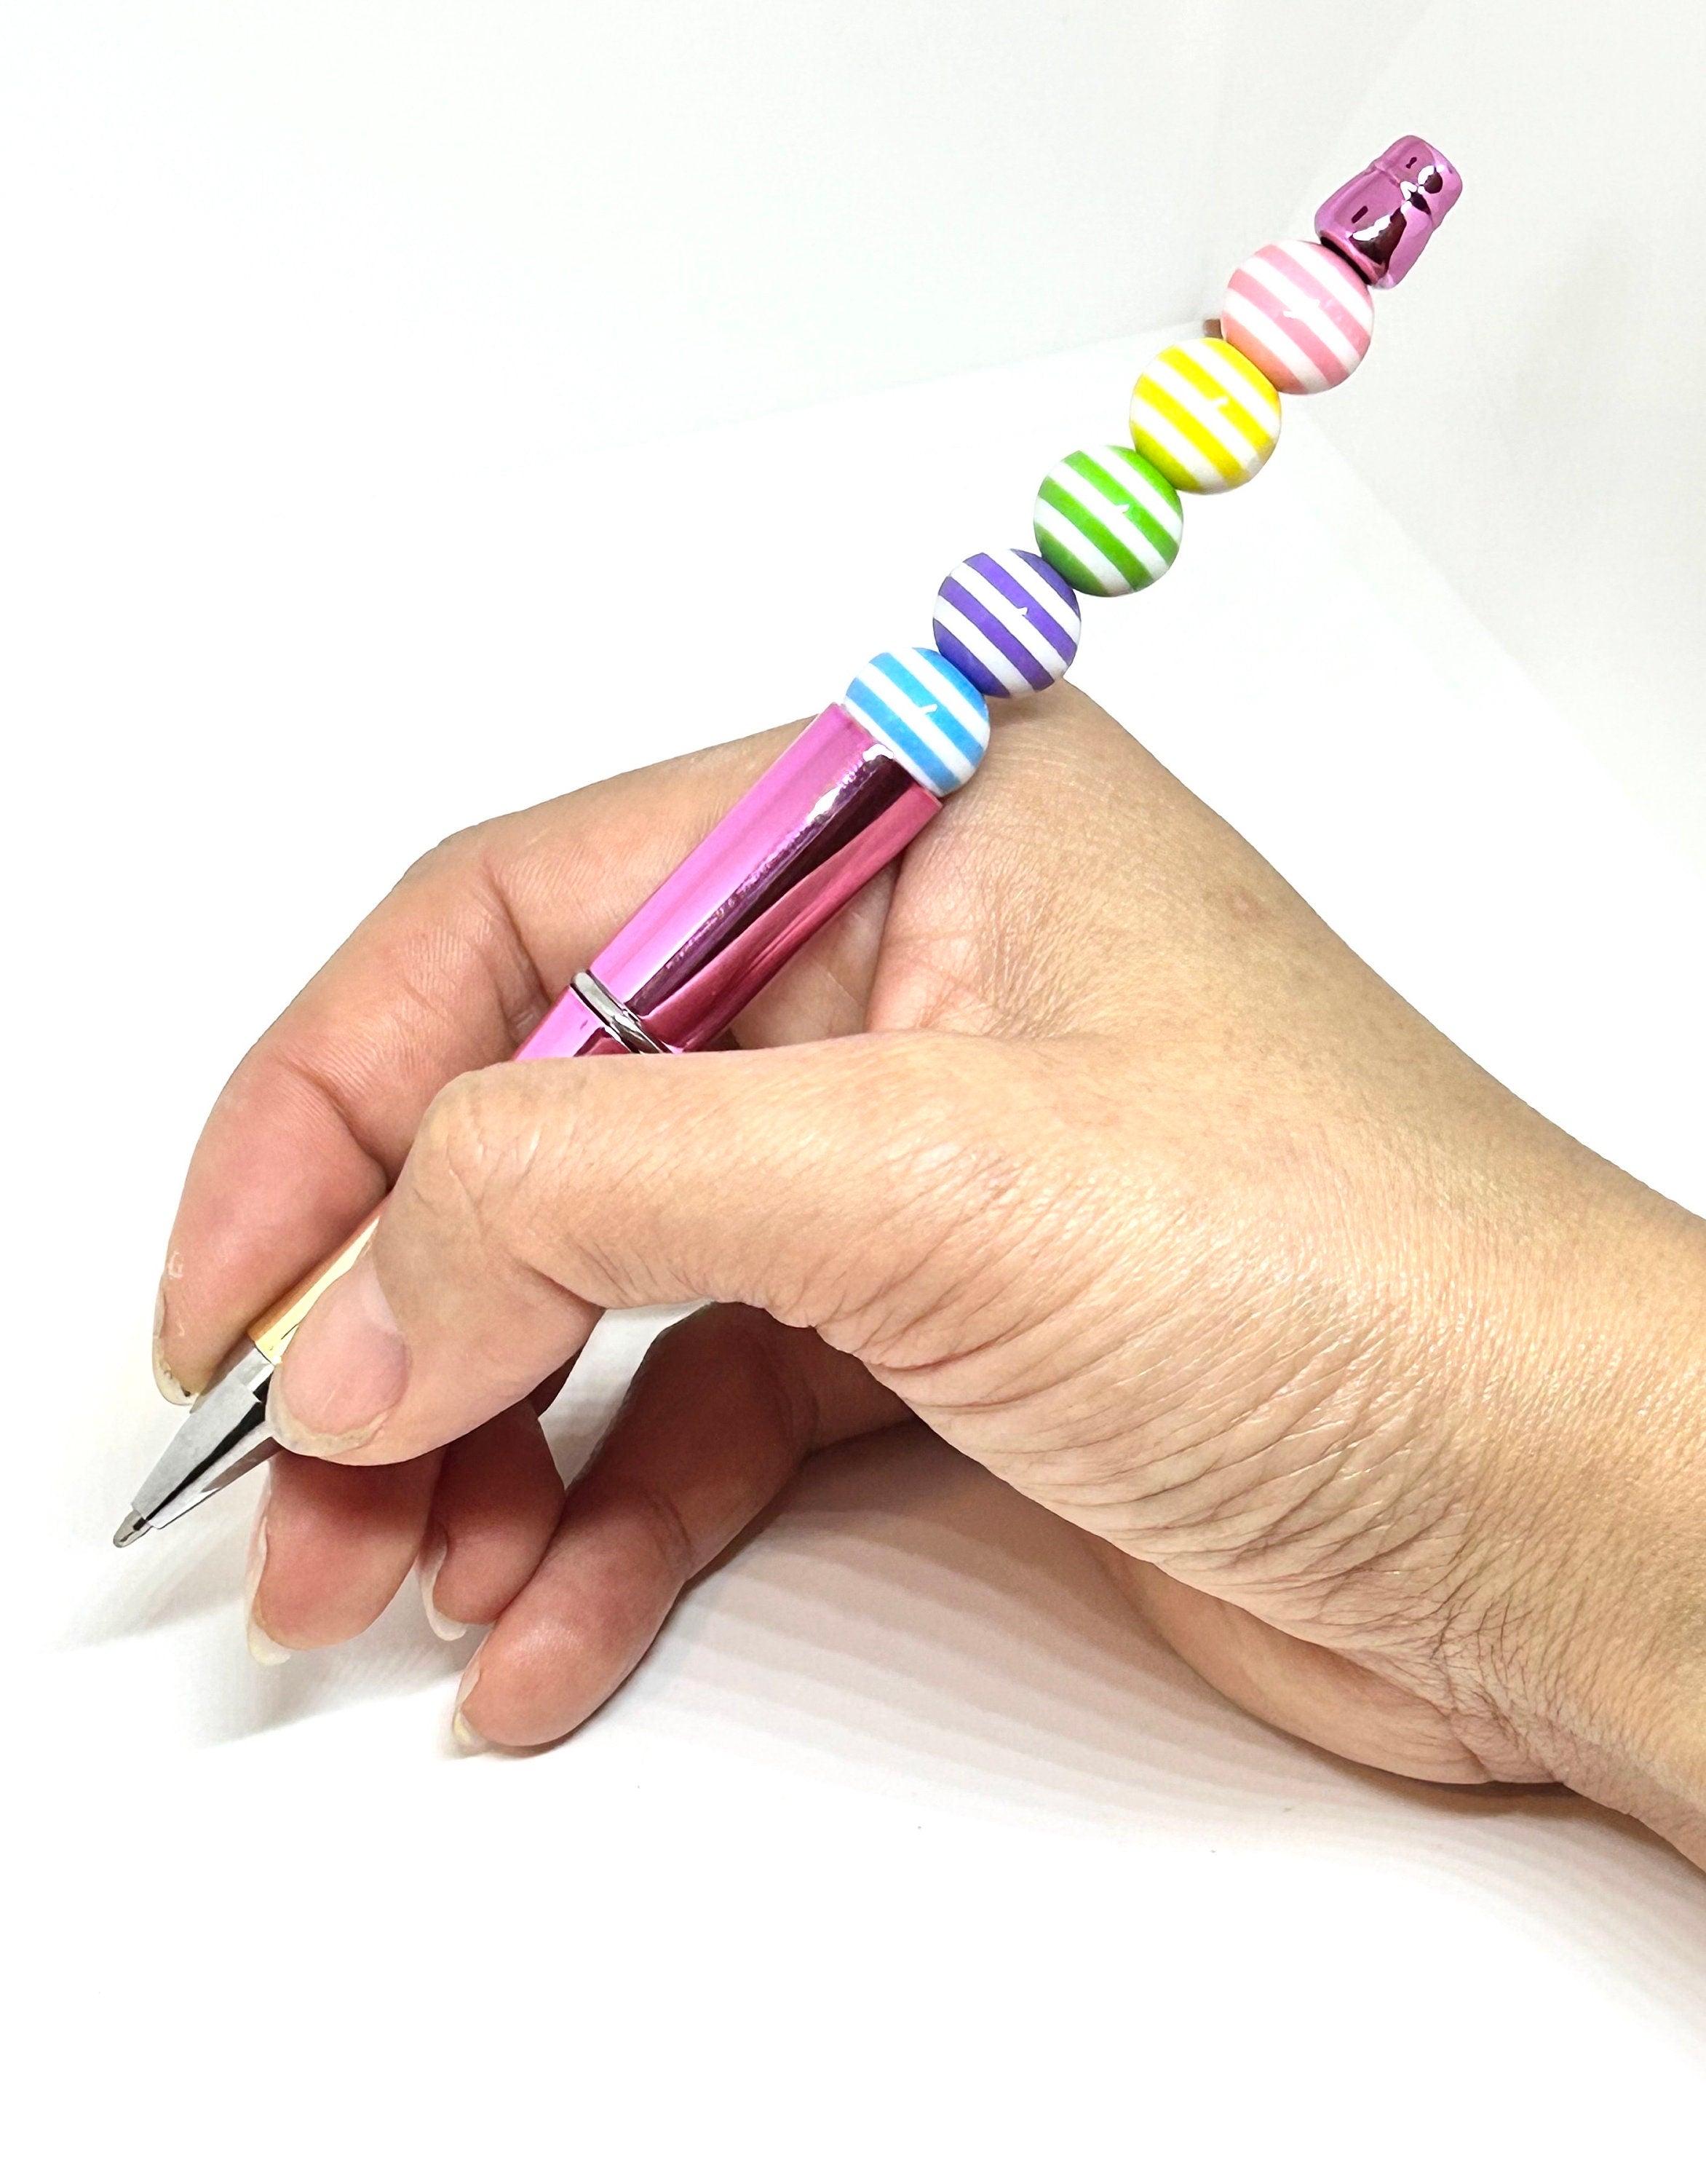 Beadable Pens Beaded Pens MAMA Matte Black Modern Neutral Office Supplies  Pens Custom Gift Ideas 